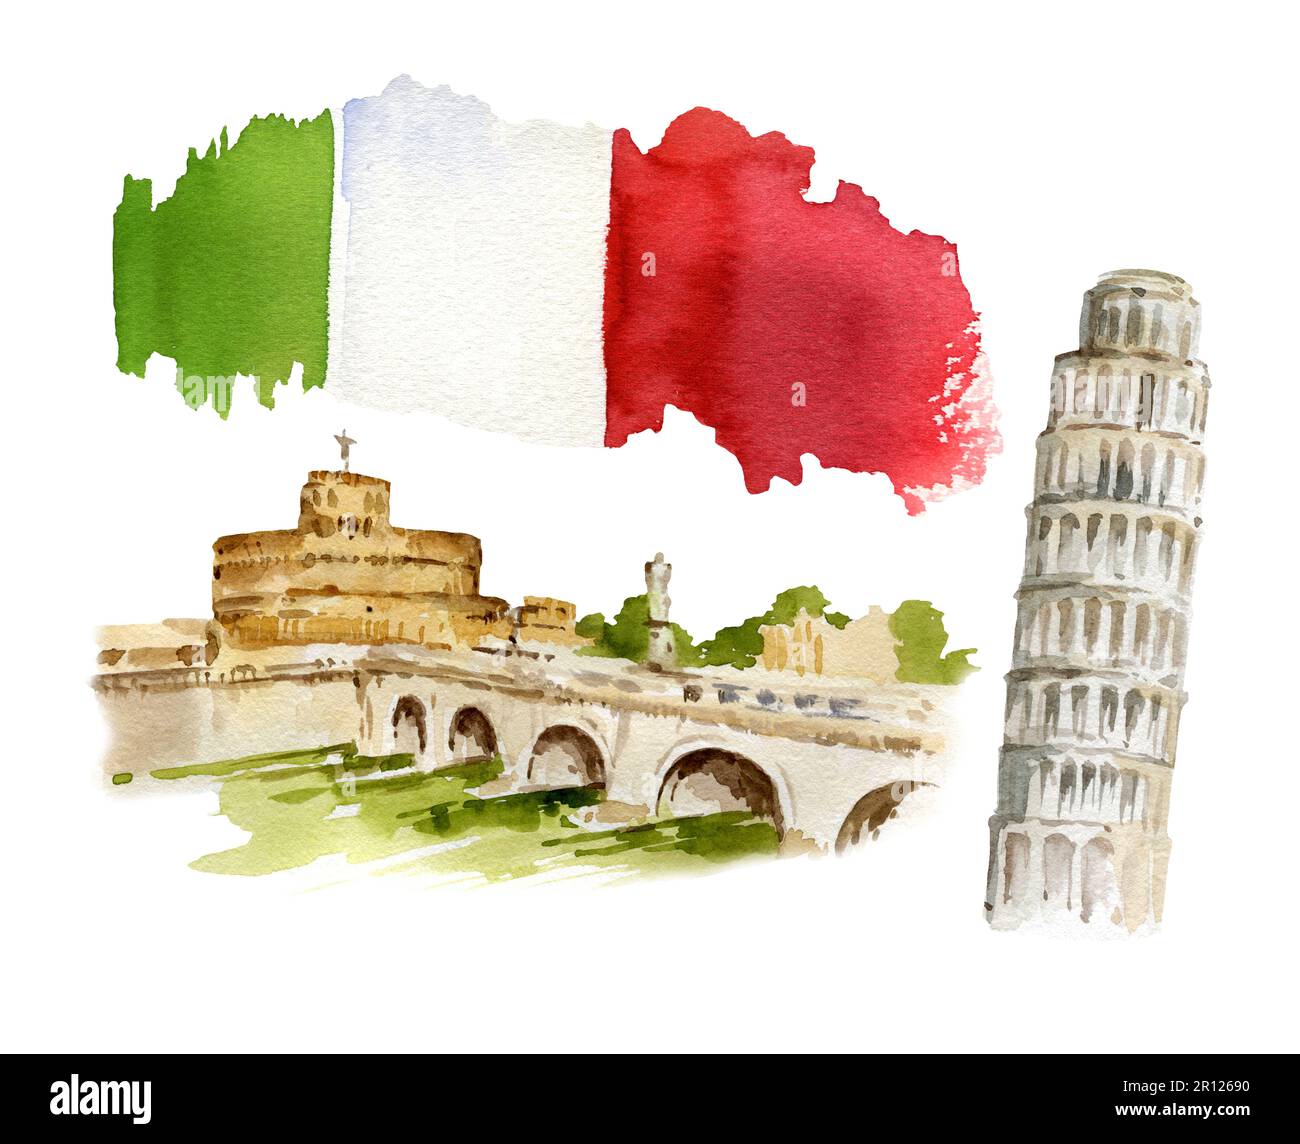 Aquarelle Illustration von Rom, Pisa Italien, handgezeichnetes Panorama des Tibers, Brücke und alter Turm mit der Flagge Italiens. Stockfoto